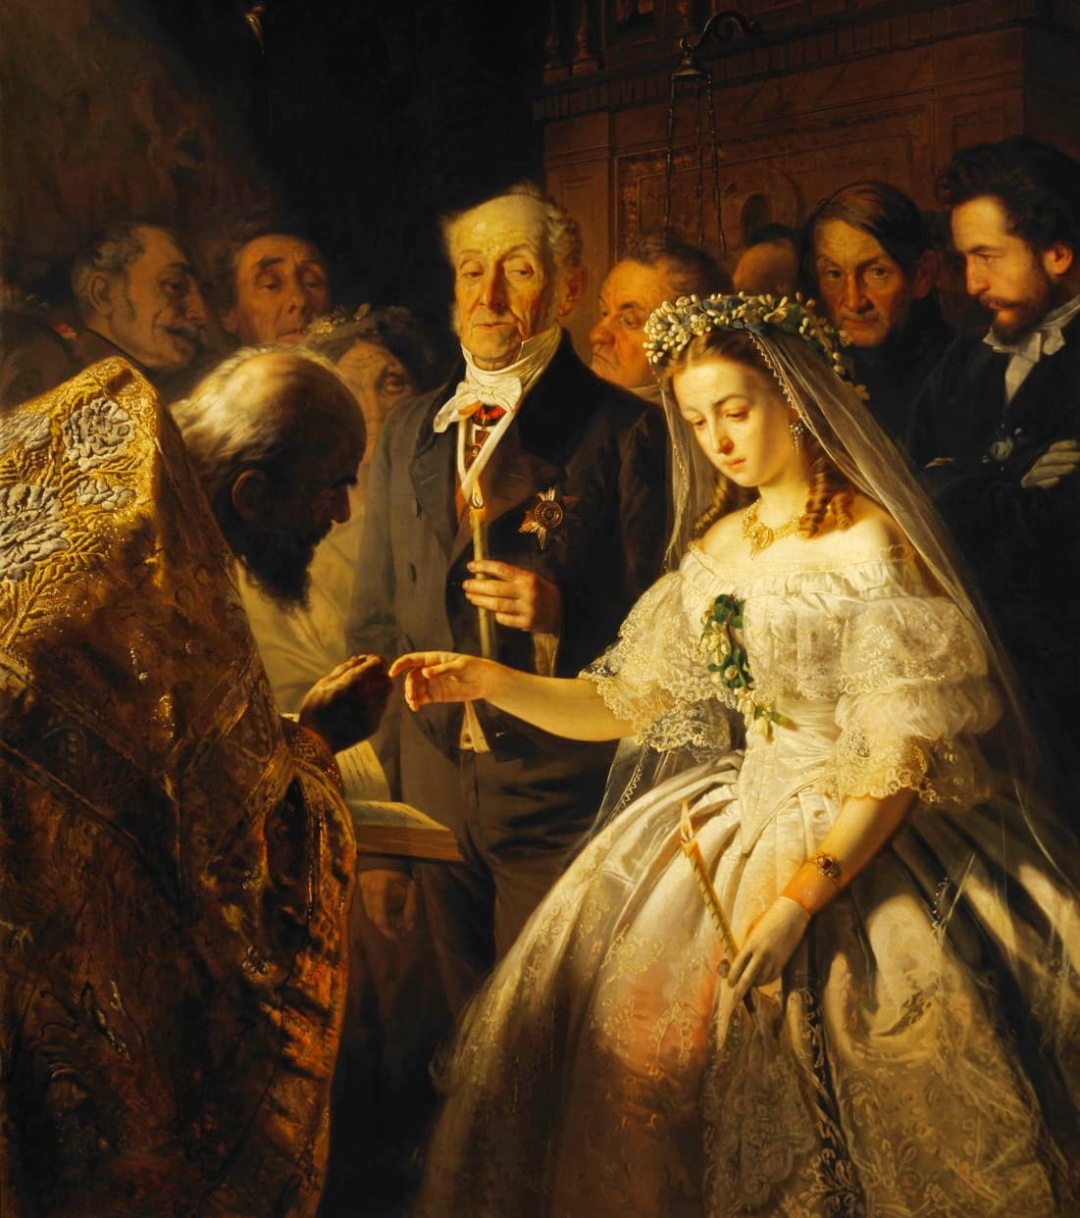 “Нерівний шлюб” пензля Василя Пукірєва, створена в 1862 р. за мотивами вірша “Очи черные” Євгена Гребінки